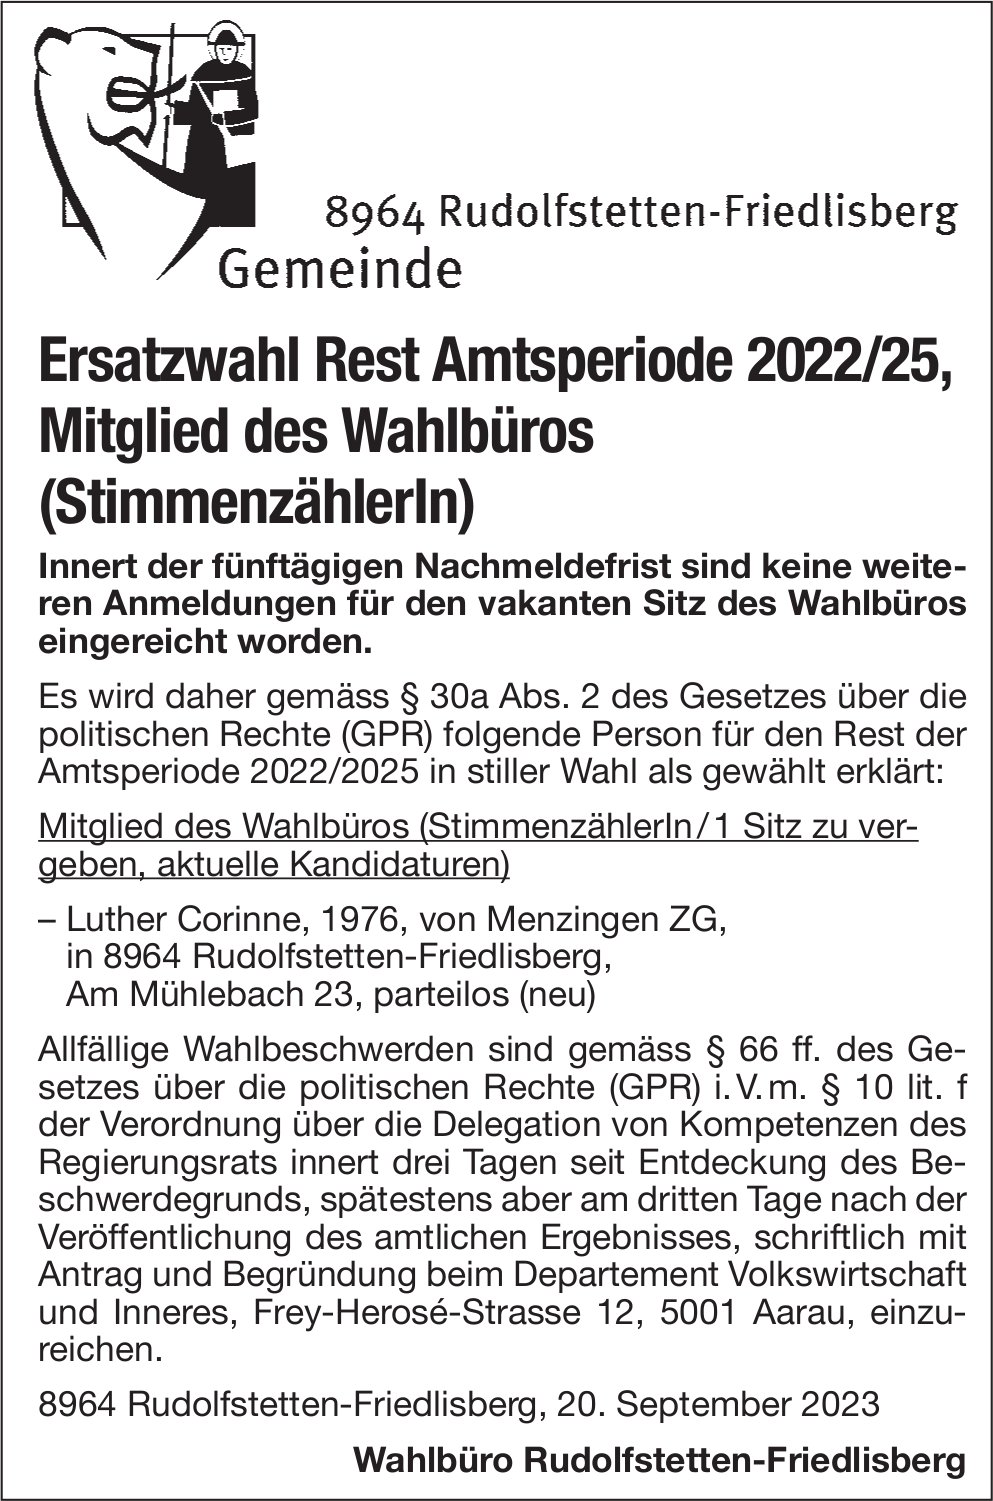 Rudolfstetten-Friedlisberg - Ersatzwahl Mitglied des Wahlbüros (StimmenzählerIn)